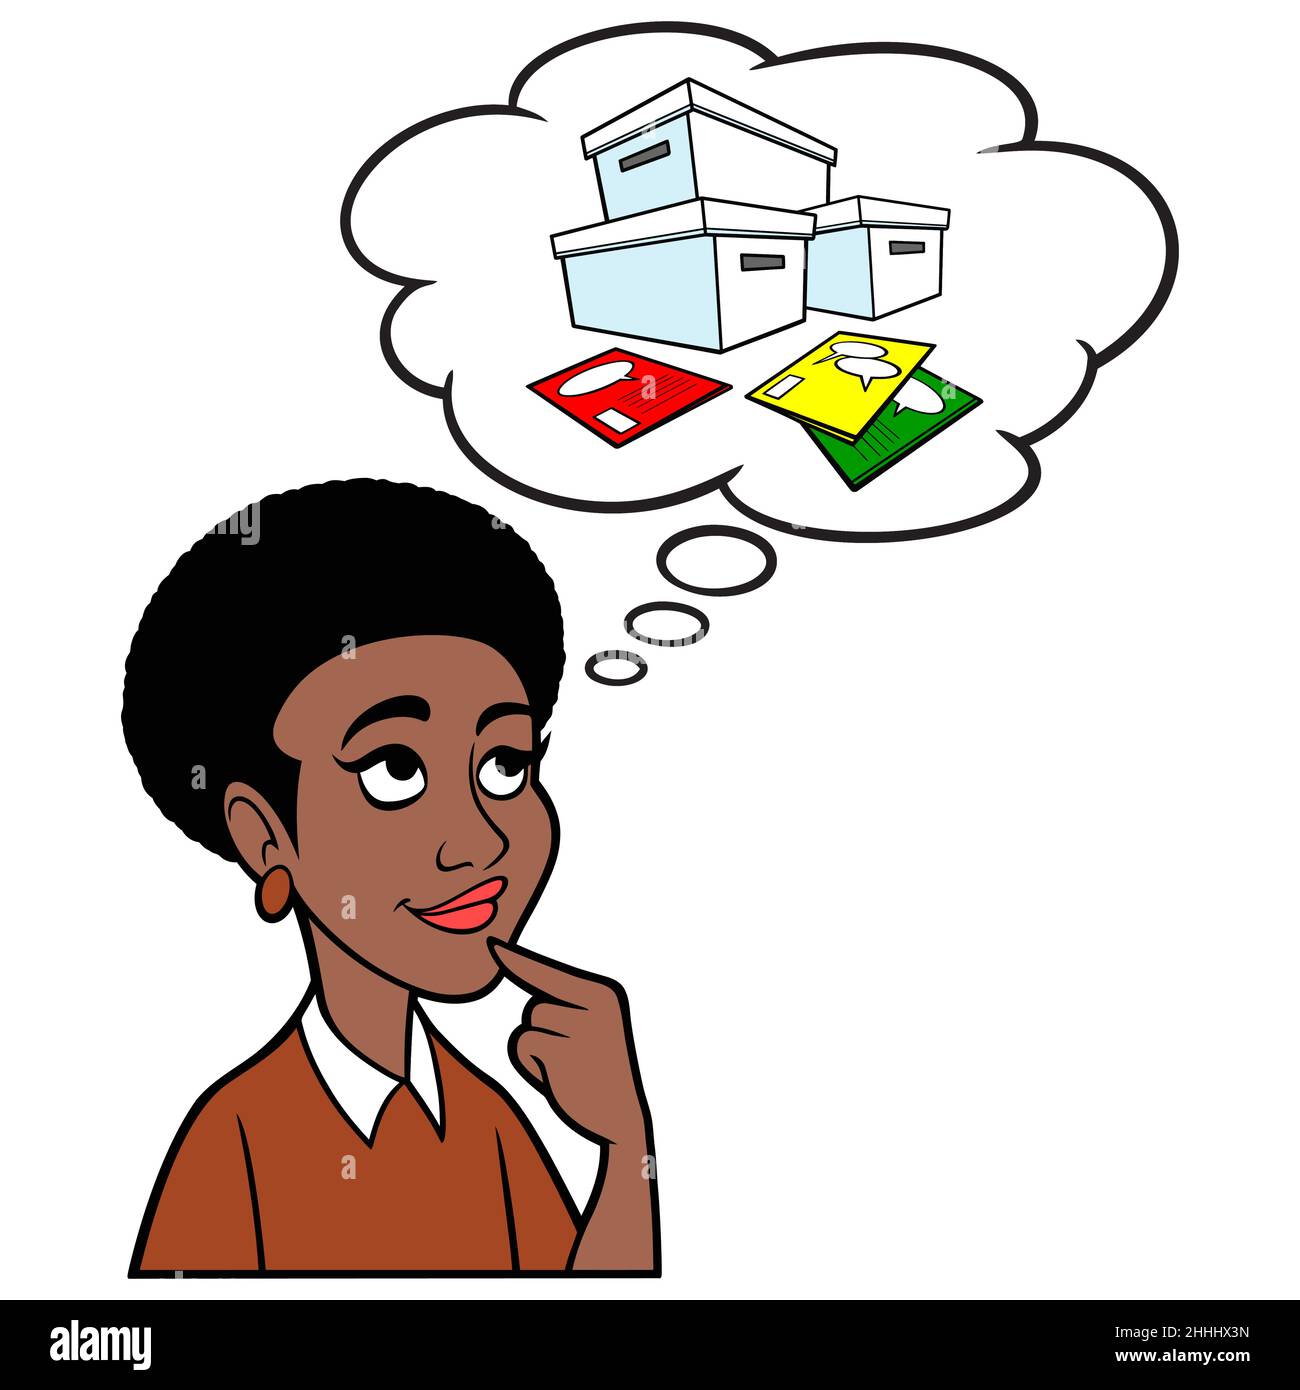 Mujer Negra Pensando en los Libros Comicos - Una ilustración de dibujos animados de una Mujer Negra pensando en su colección de Libros Comicos. Ilustración del Vector